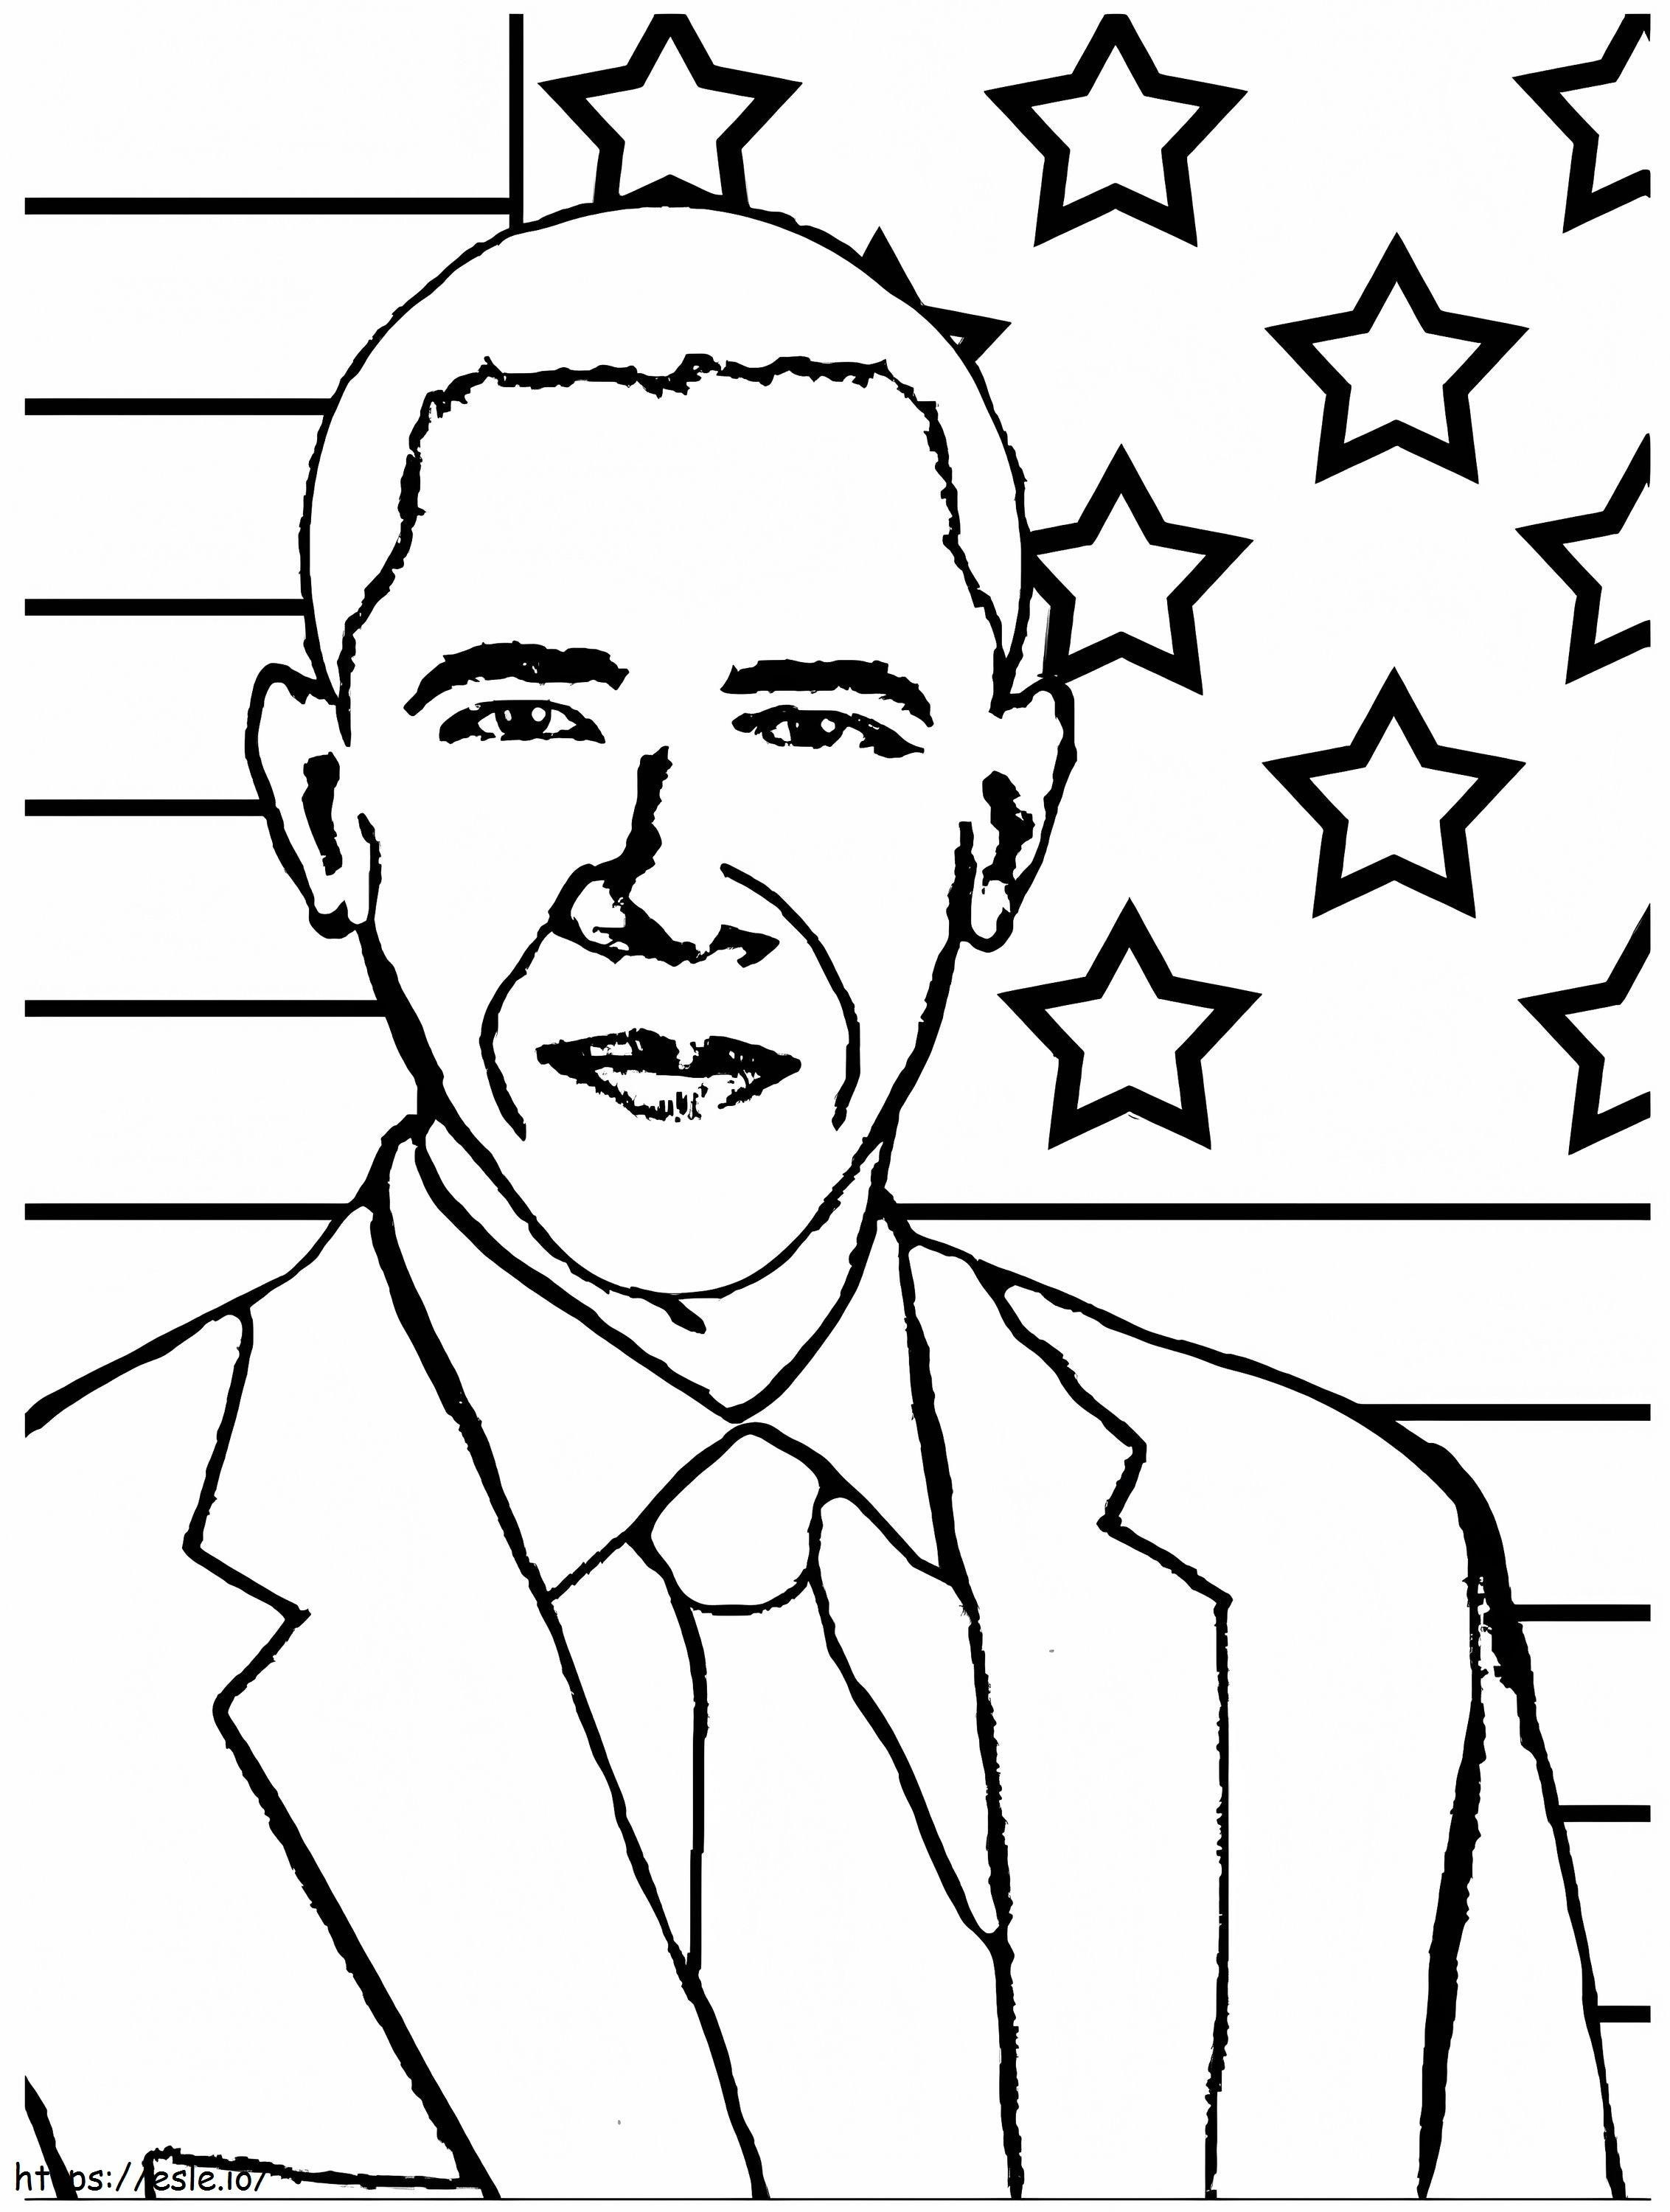 1541130883 Noul președinte Obama gratuit Better Barack Pagina 6537 pentru foi de colorat